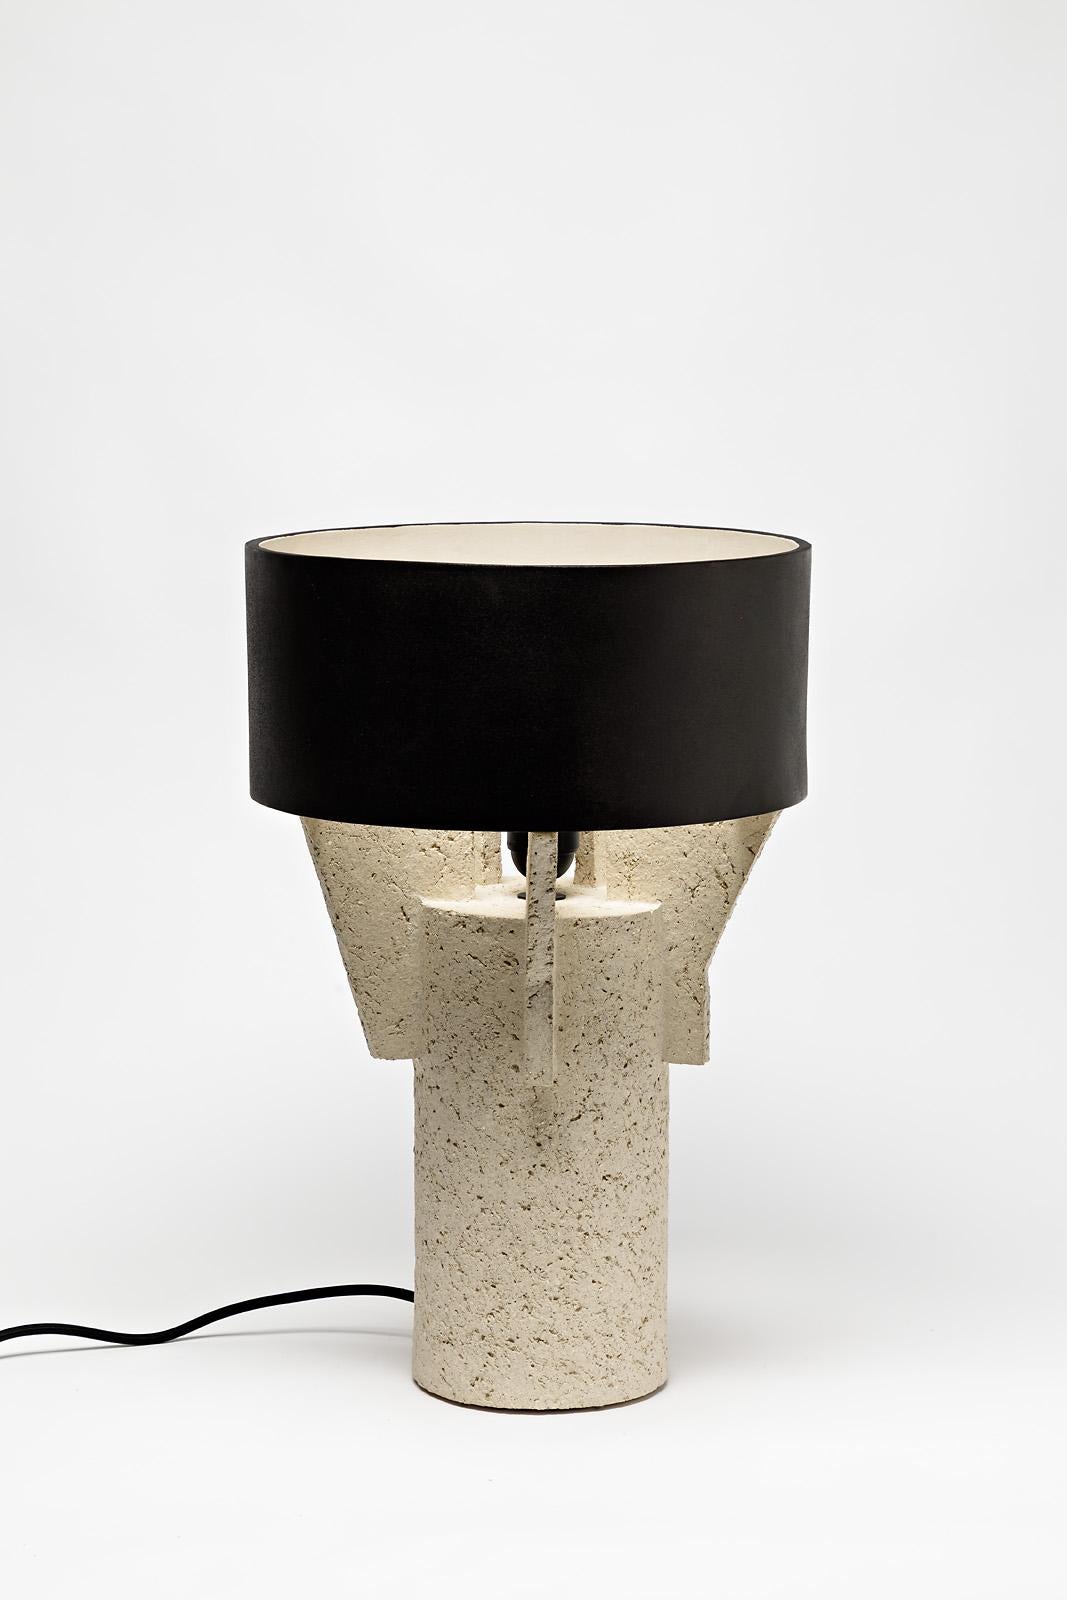 Eine Tischlampe aus Keramik von Denis Castaing mit brauner Glasur.
Der Sockel und der Lampenschirm sind aus Keramik.
Wird mit einer europäischen elektrischen Anlage verkauft.
Perfekter Originalzustand.
2019.
Unter dem Sockel signiert.